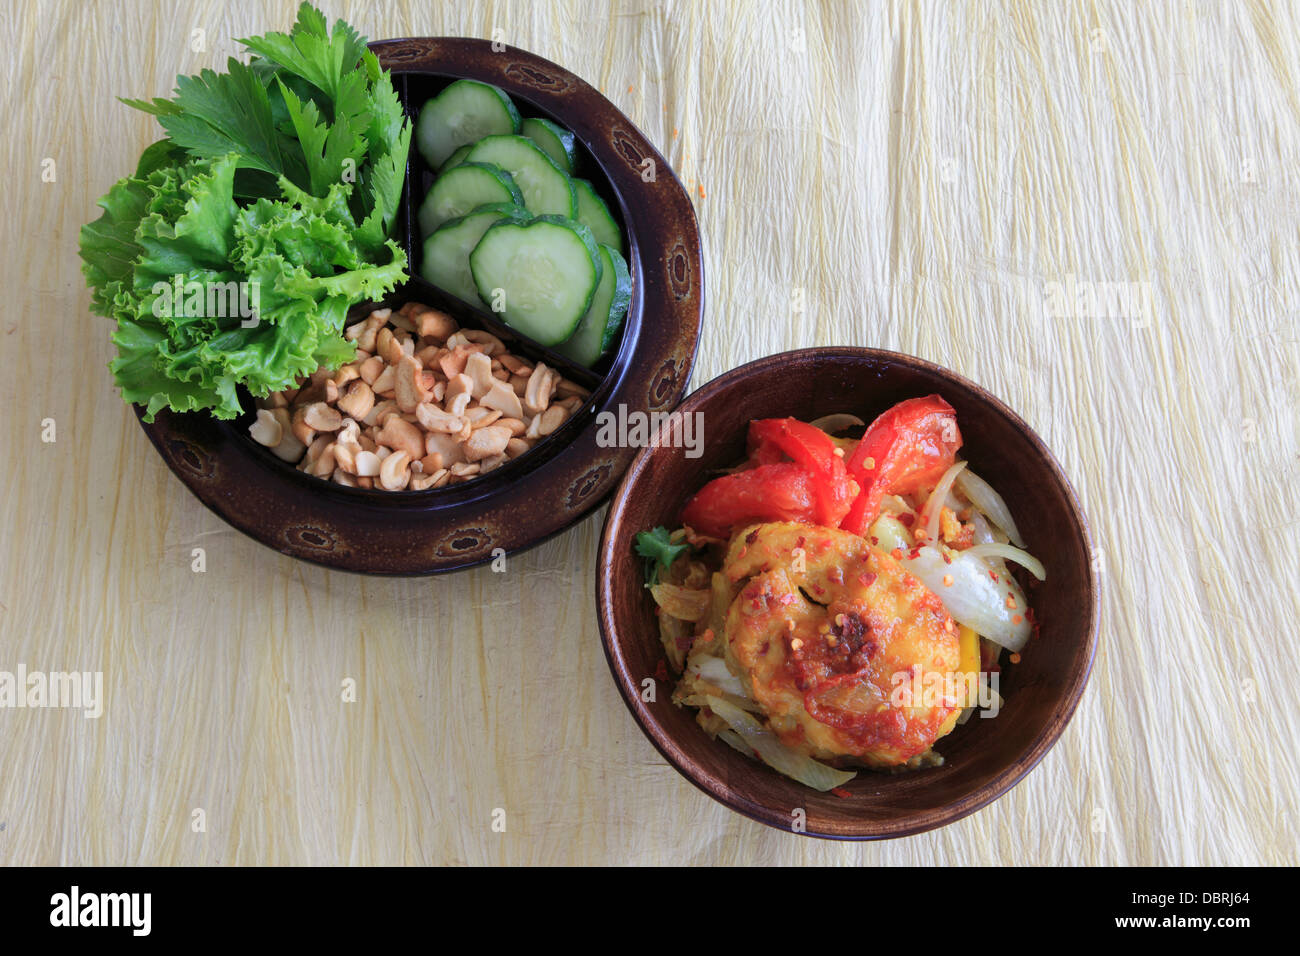 La cuisine asiatique, beignets de requin à l'étuvée, salade Banque D'Images